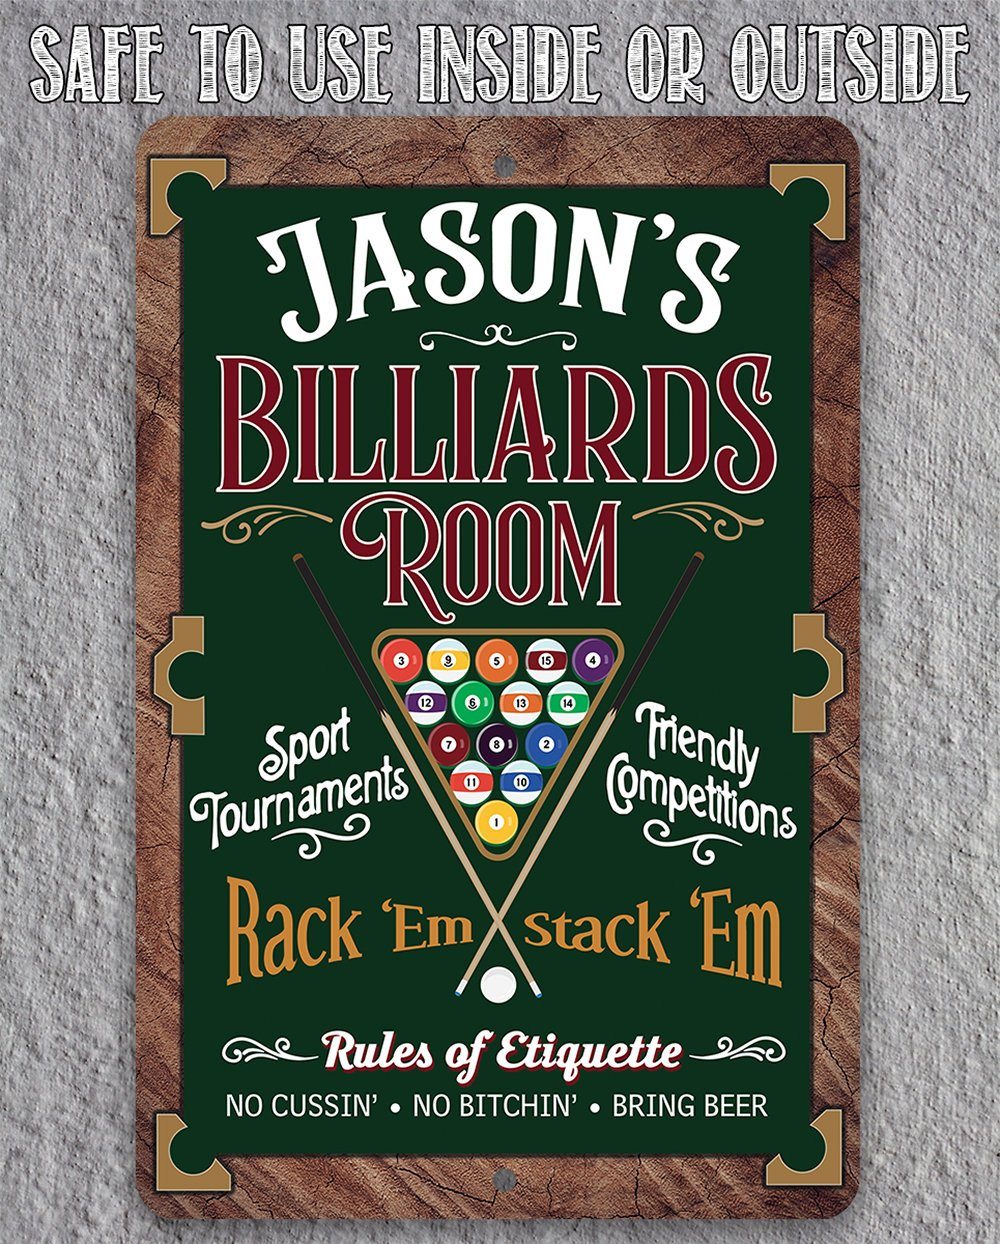 Personalized - Billiards Room Rack"Em Stack 'Em - Metal Sign | Lone Star Art.